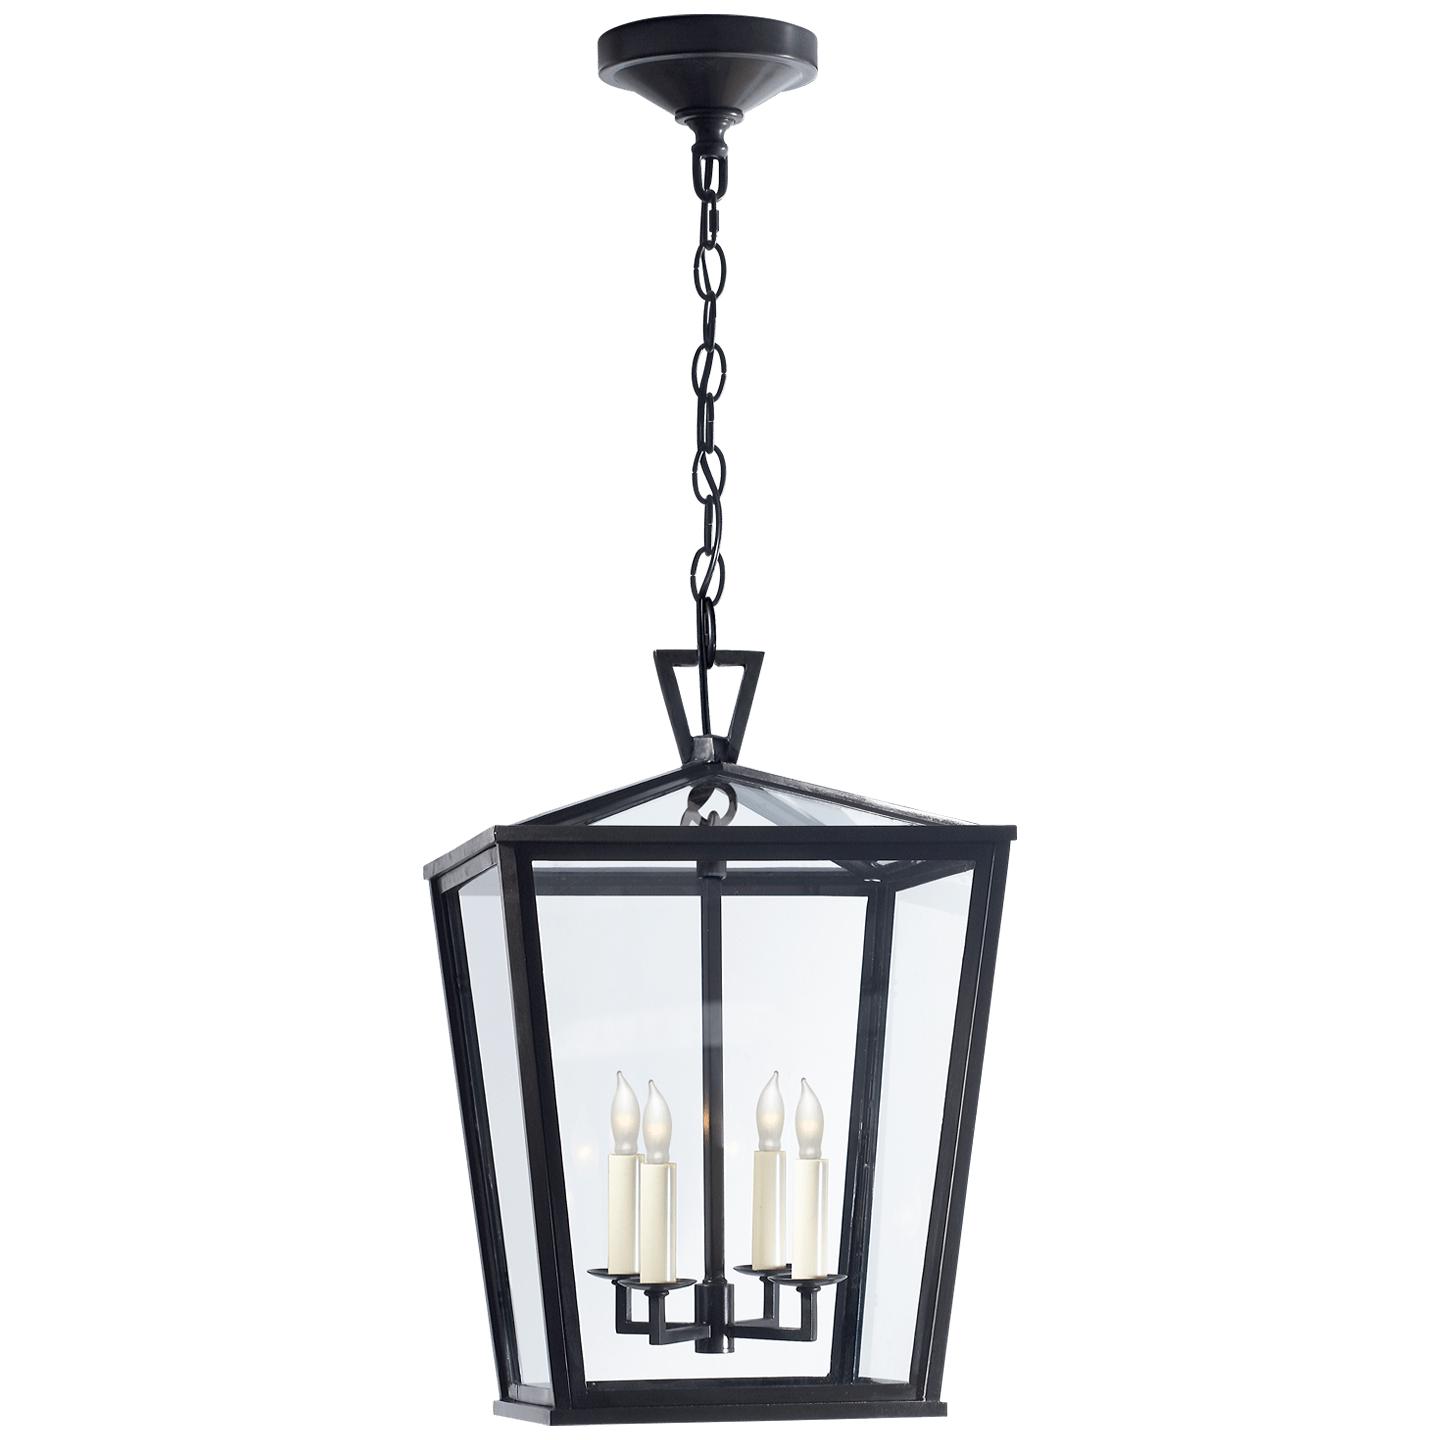 Купить Подвесной светильник Darlana Small Hanging Lantern в интернет-магазине roooms.ru